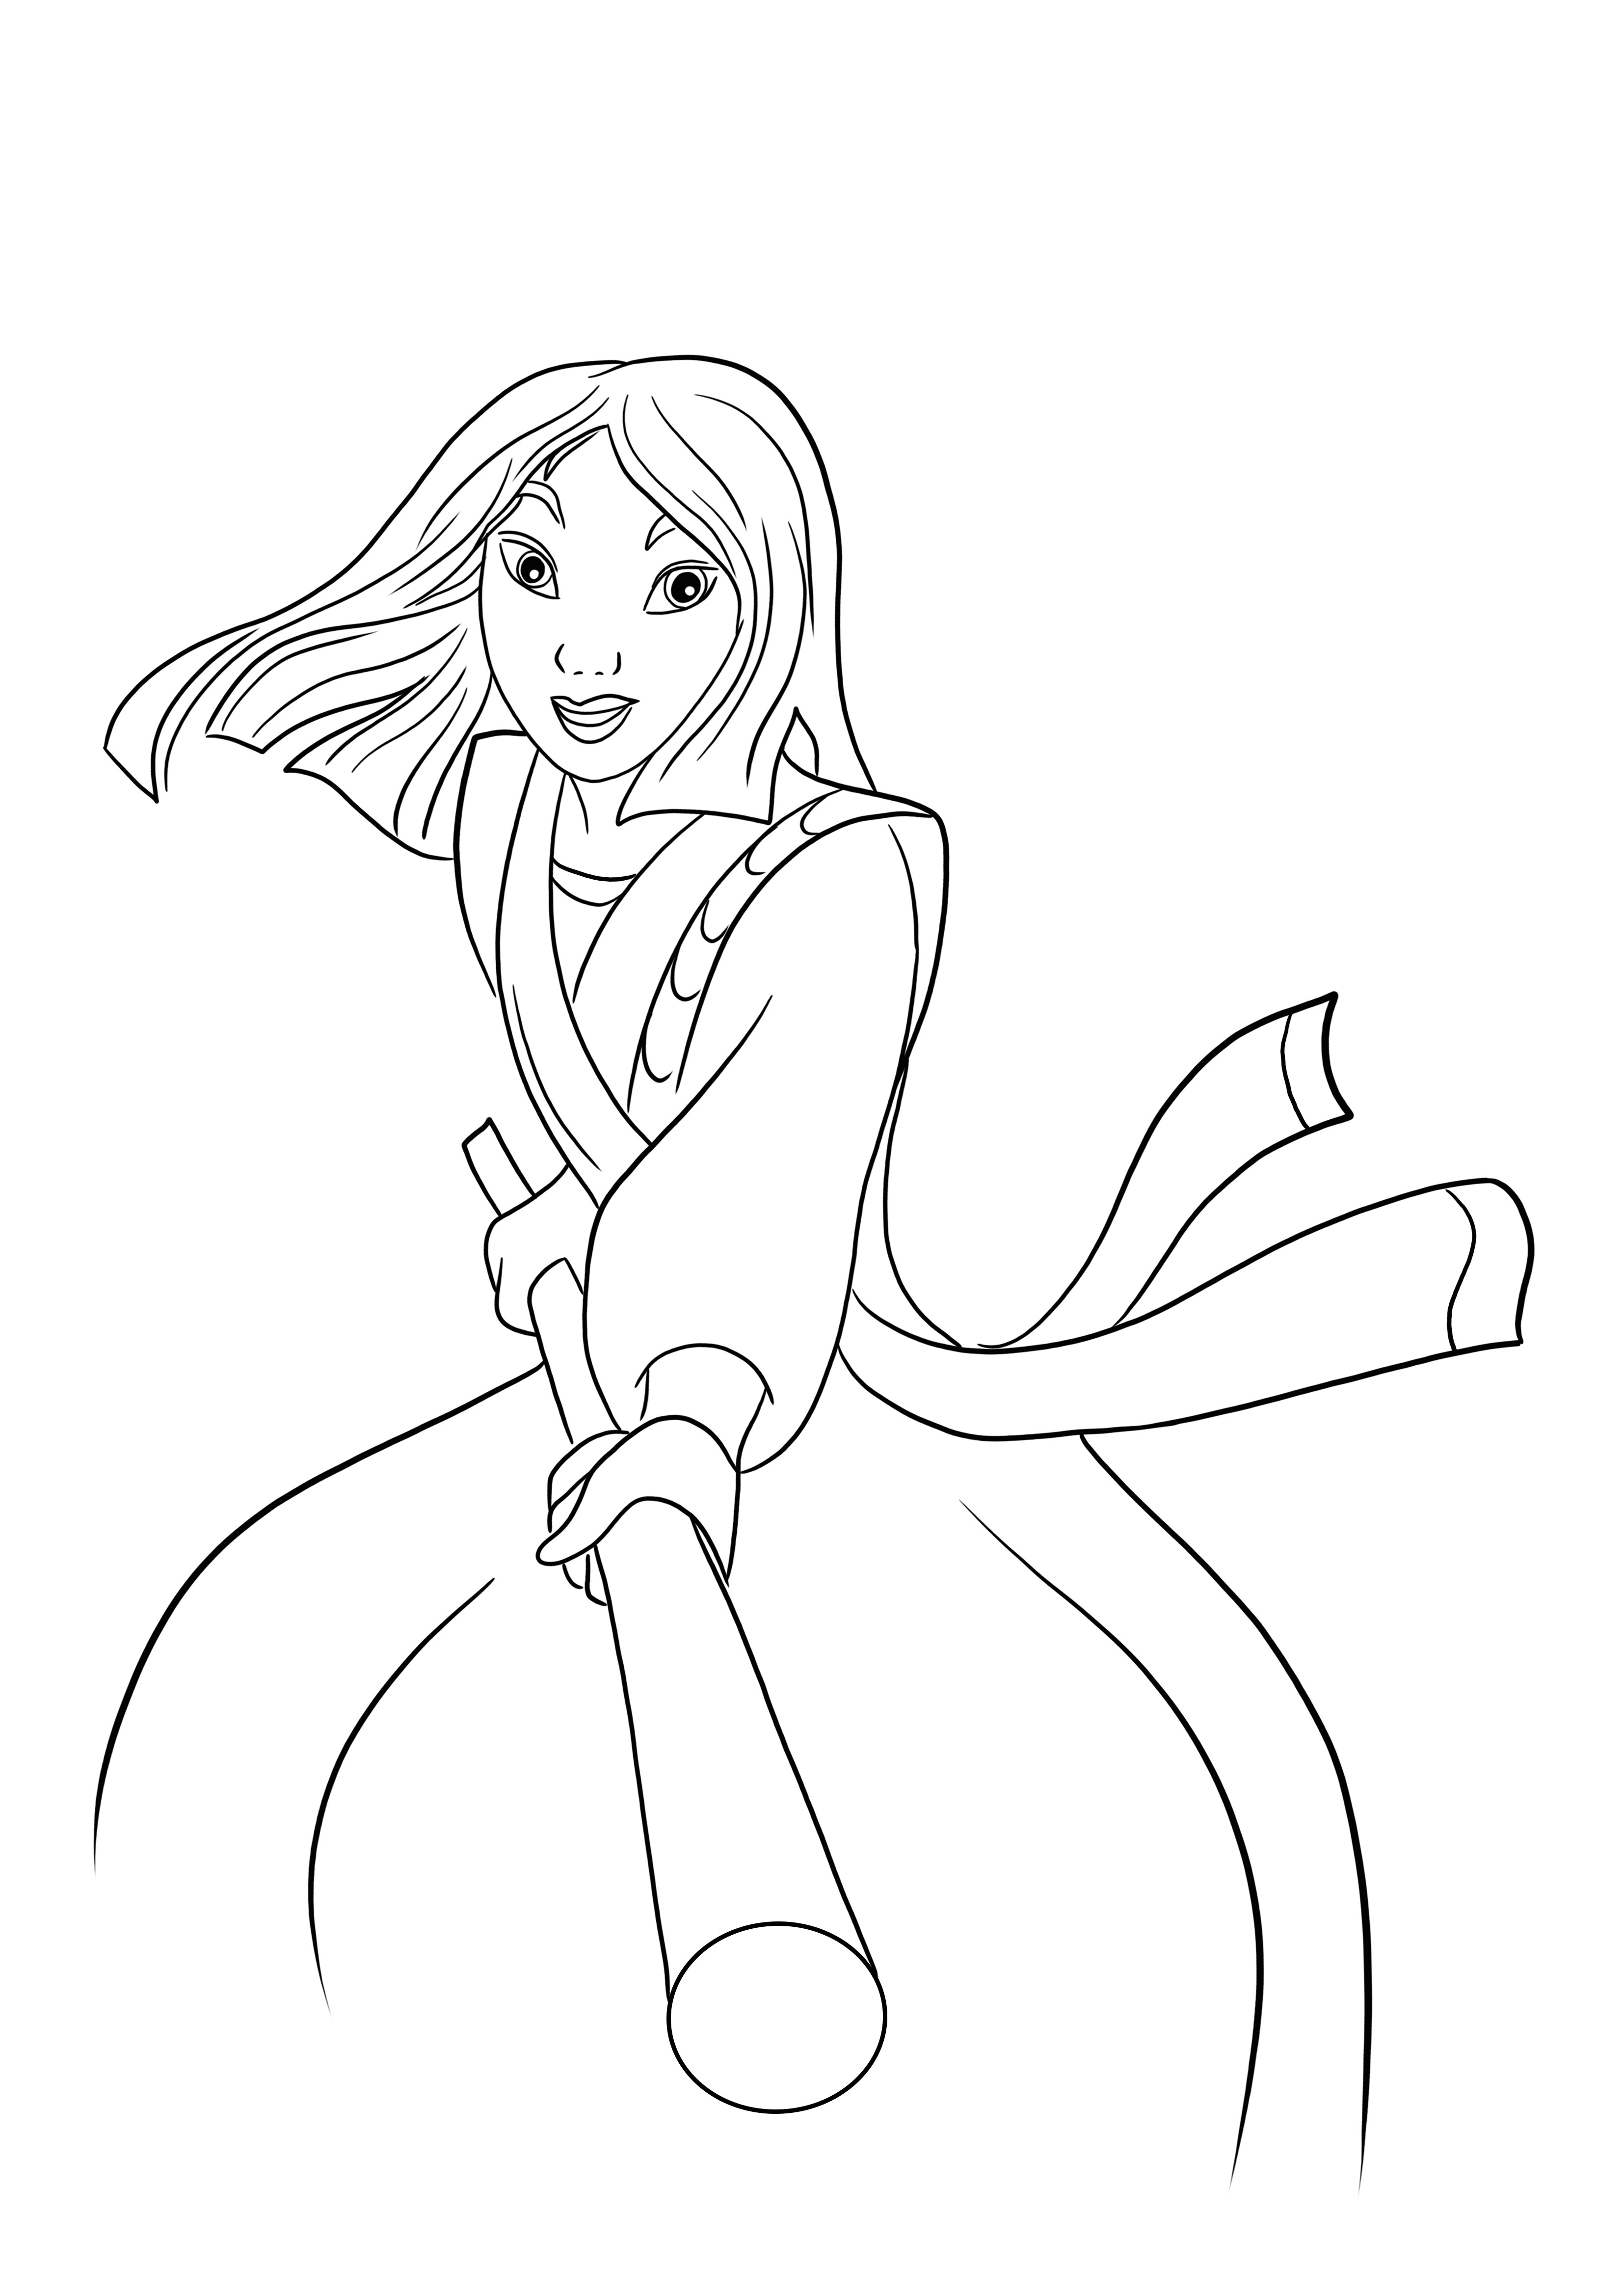 Aquí hay una descarga gratuita de la imagen de lucha de la princesa Mulan para colorear fácilmente